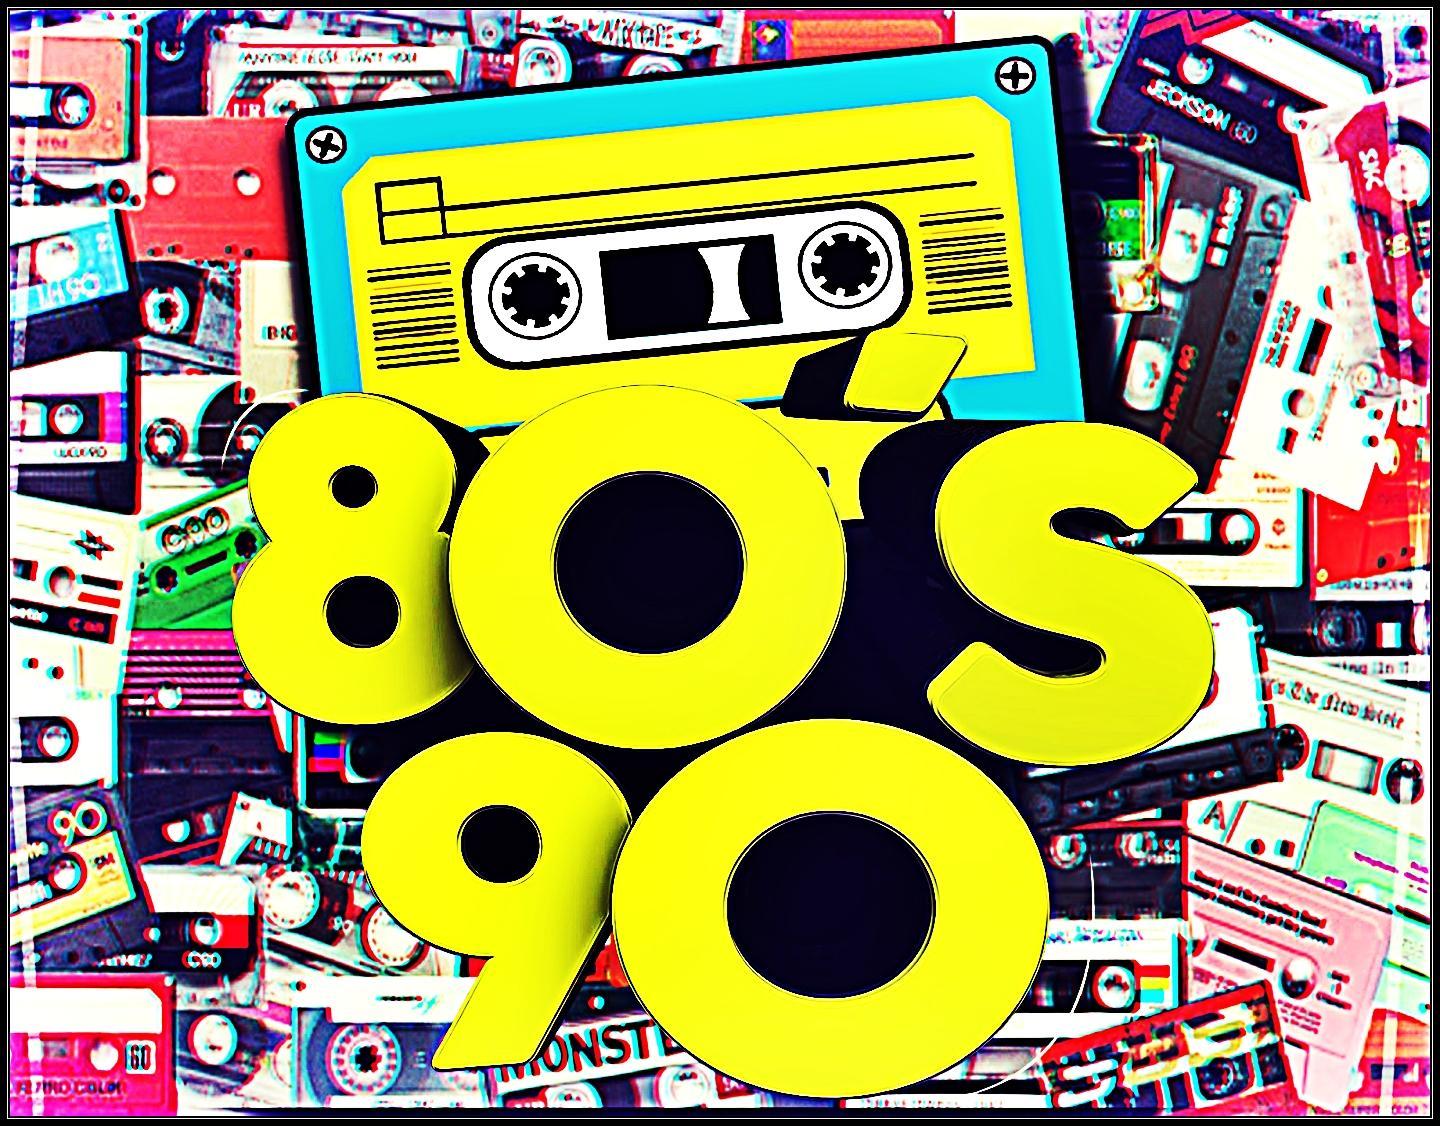 70 80 90 год музыка. Диско 80-90. Фон дискотека 90-х. Дискотека 80-90х. Ретро дискотека.